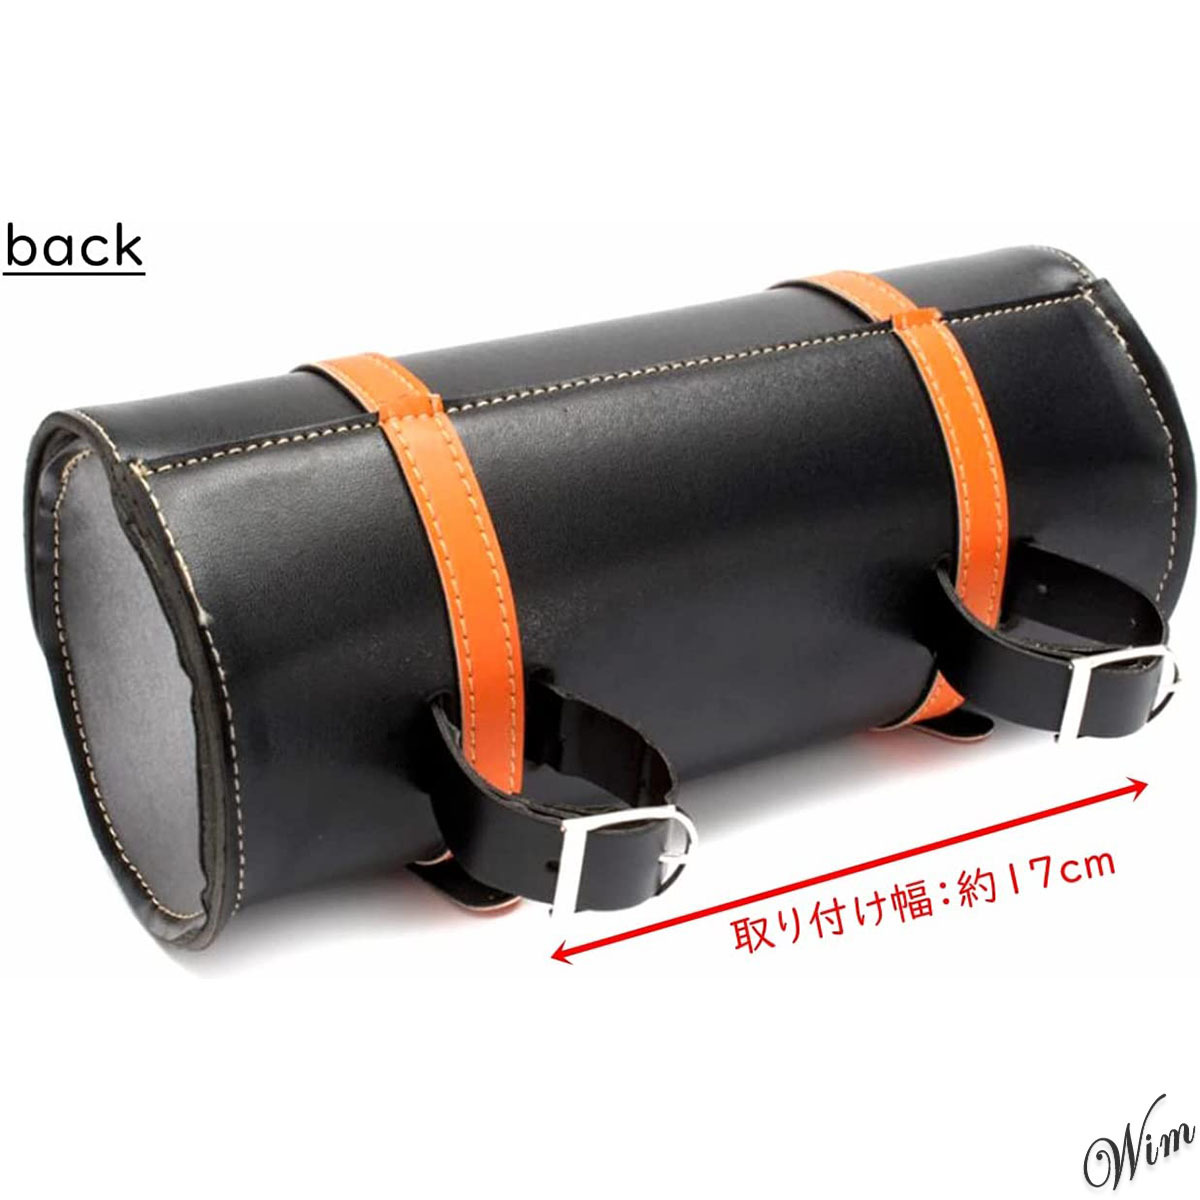 ◆ブラック×オレンジ◆ サイドバッグ ツールバッグ 取付ベルト付き オートバイ バイク アクセサリー 防水 小物入れ ツーリング